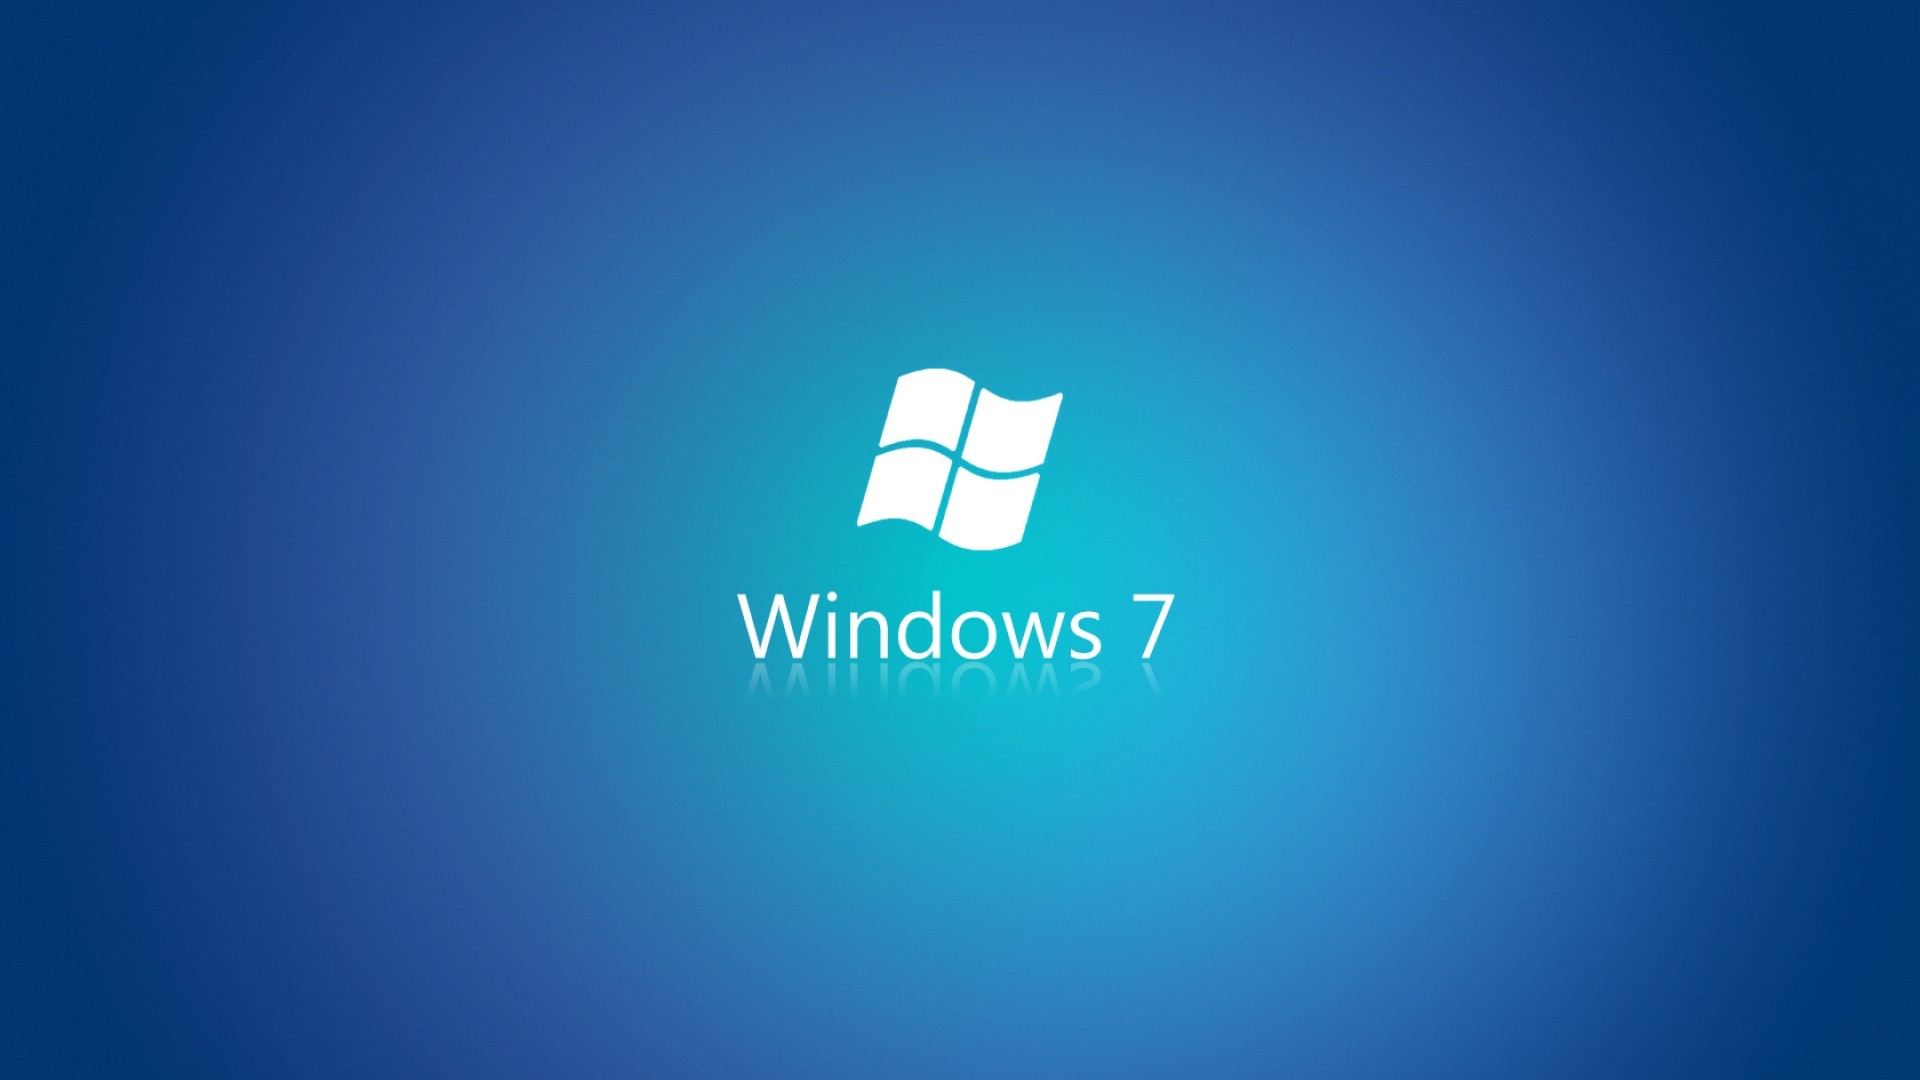 Windows 7 Wallpaper HD J6P WALLPAPERUN.COM